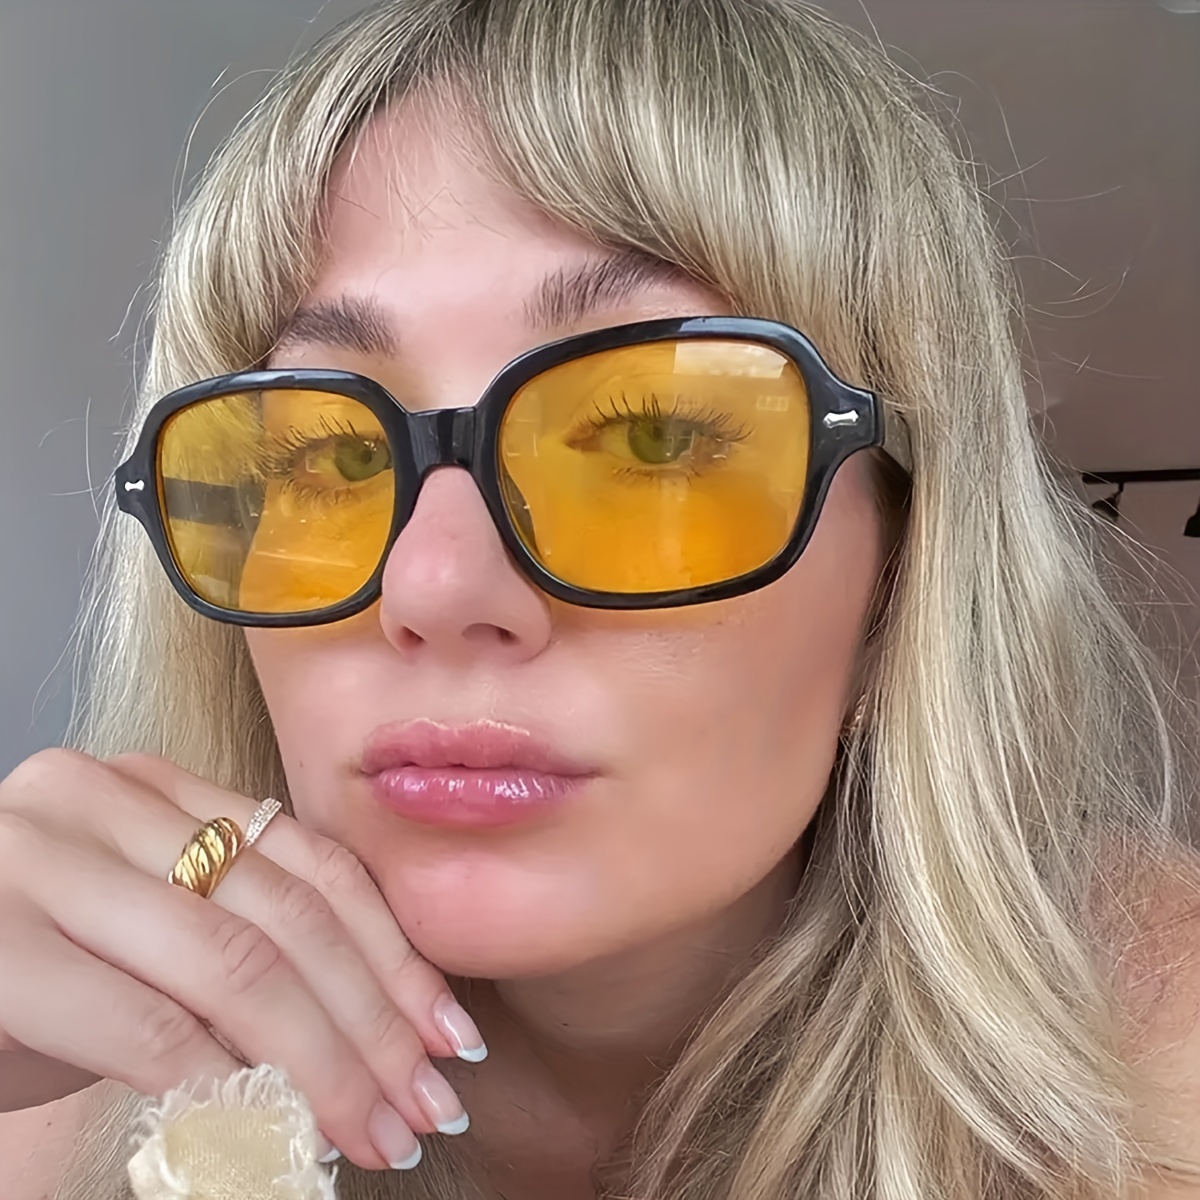 

Retro Square Fashion Glasses For Women Men Casual Fashion Anti Glare Sun Shades For Vacation Beach Party